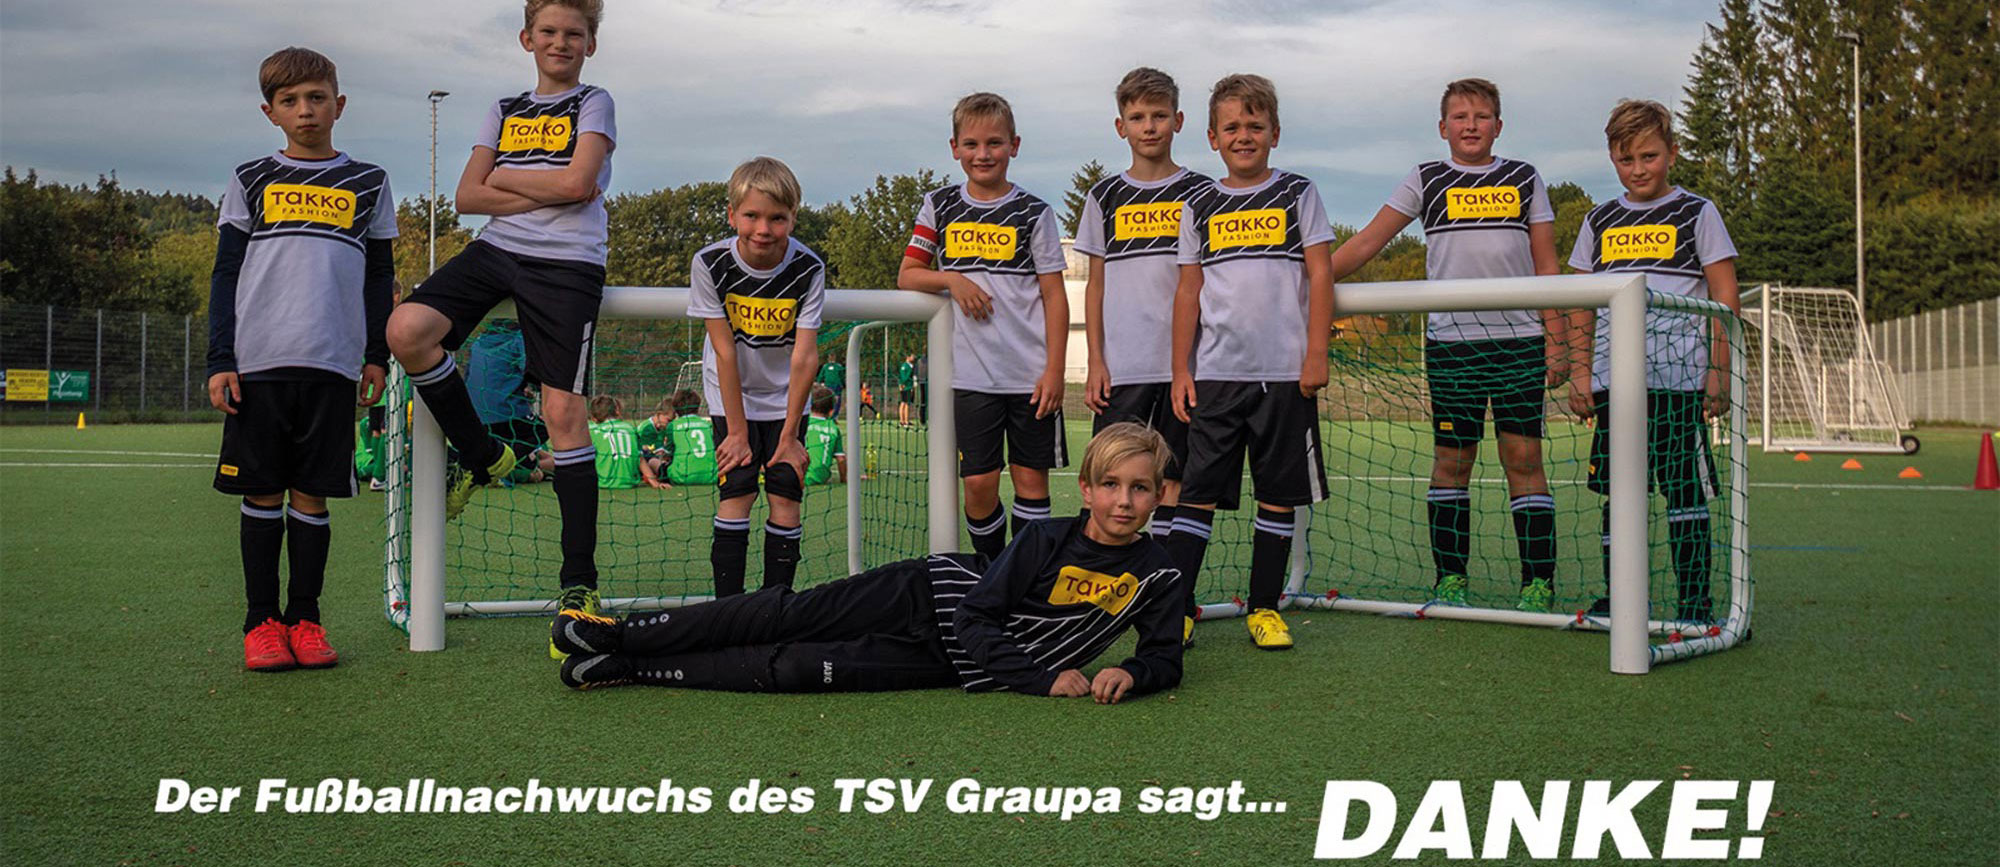 0 Sponsoring TSV Graupa E. V